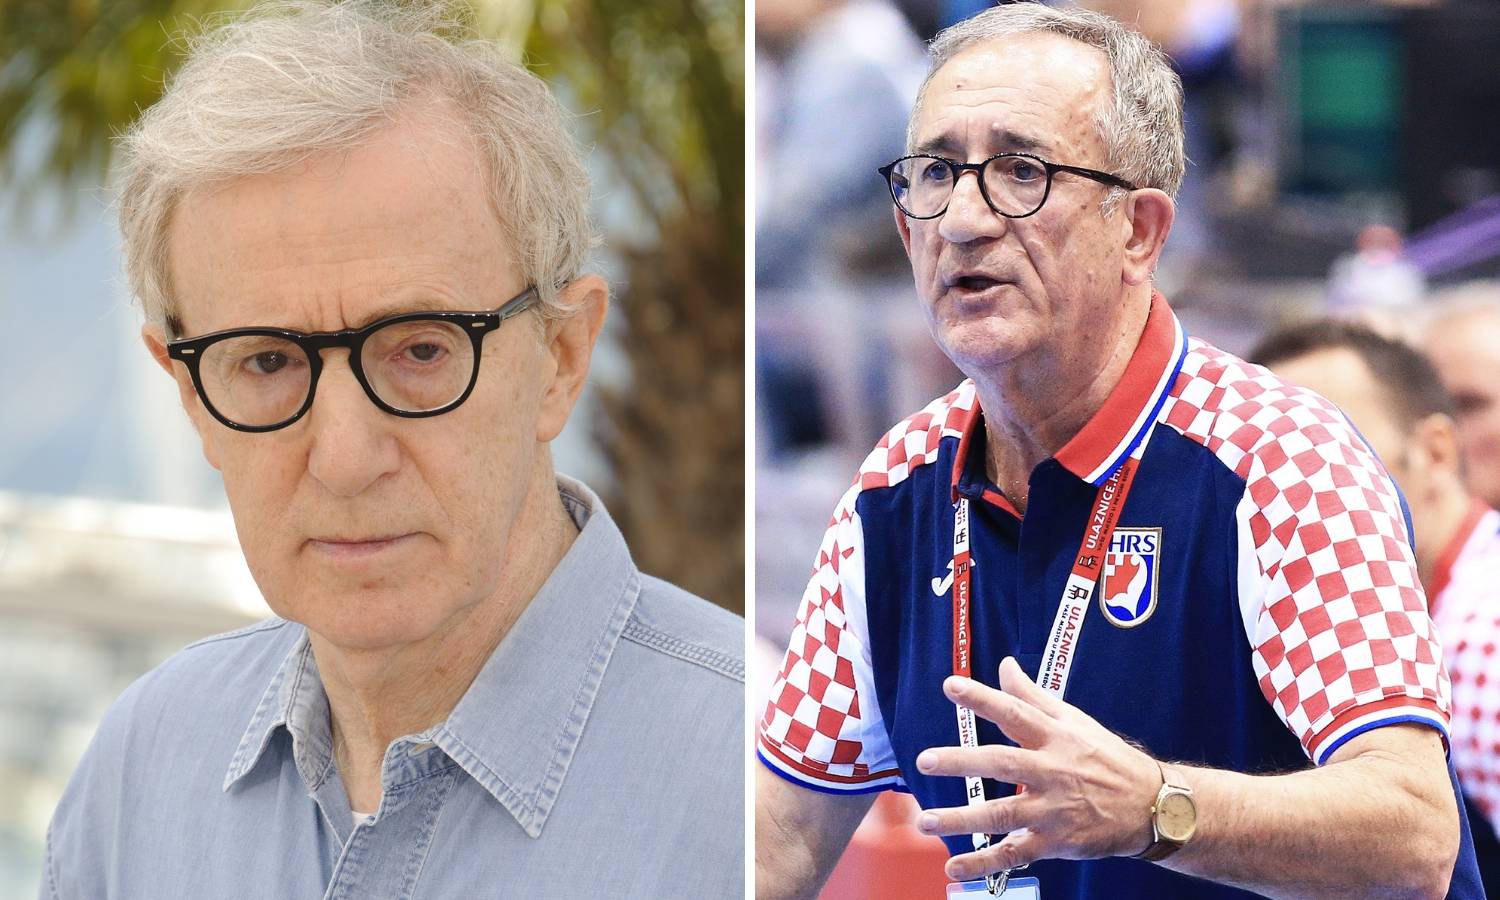 Francuzi o kaubojima: Hrvatski Woody Allen traži novi Oscar...